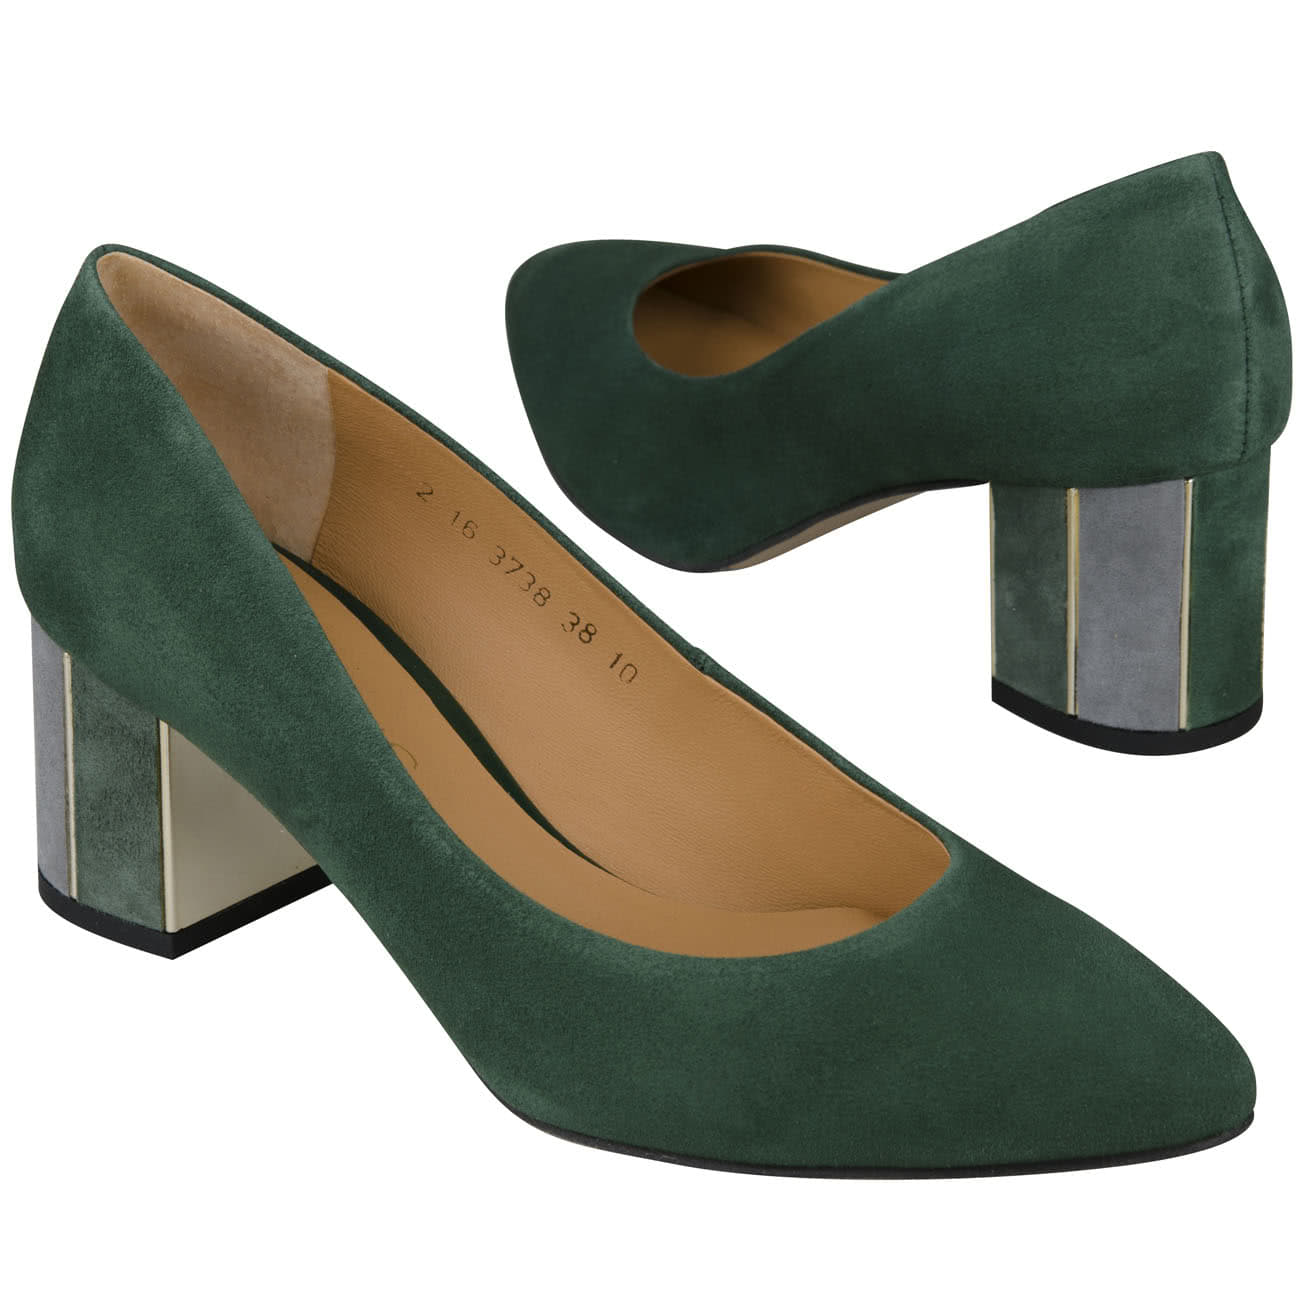 Зеленые замшевые женские. Туфли зеленые Clarks 15736. Марко туфли зеленый. Замшевые зеленые туфли Jack Jones. Туфли Tuffoni зеленые замшевые.